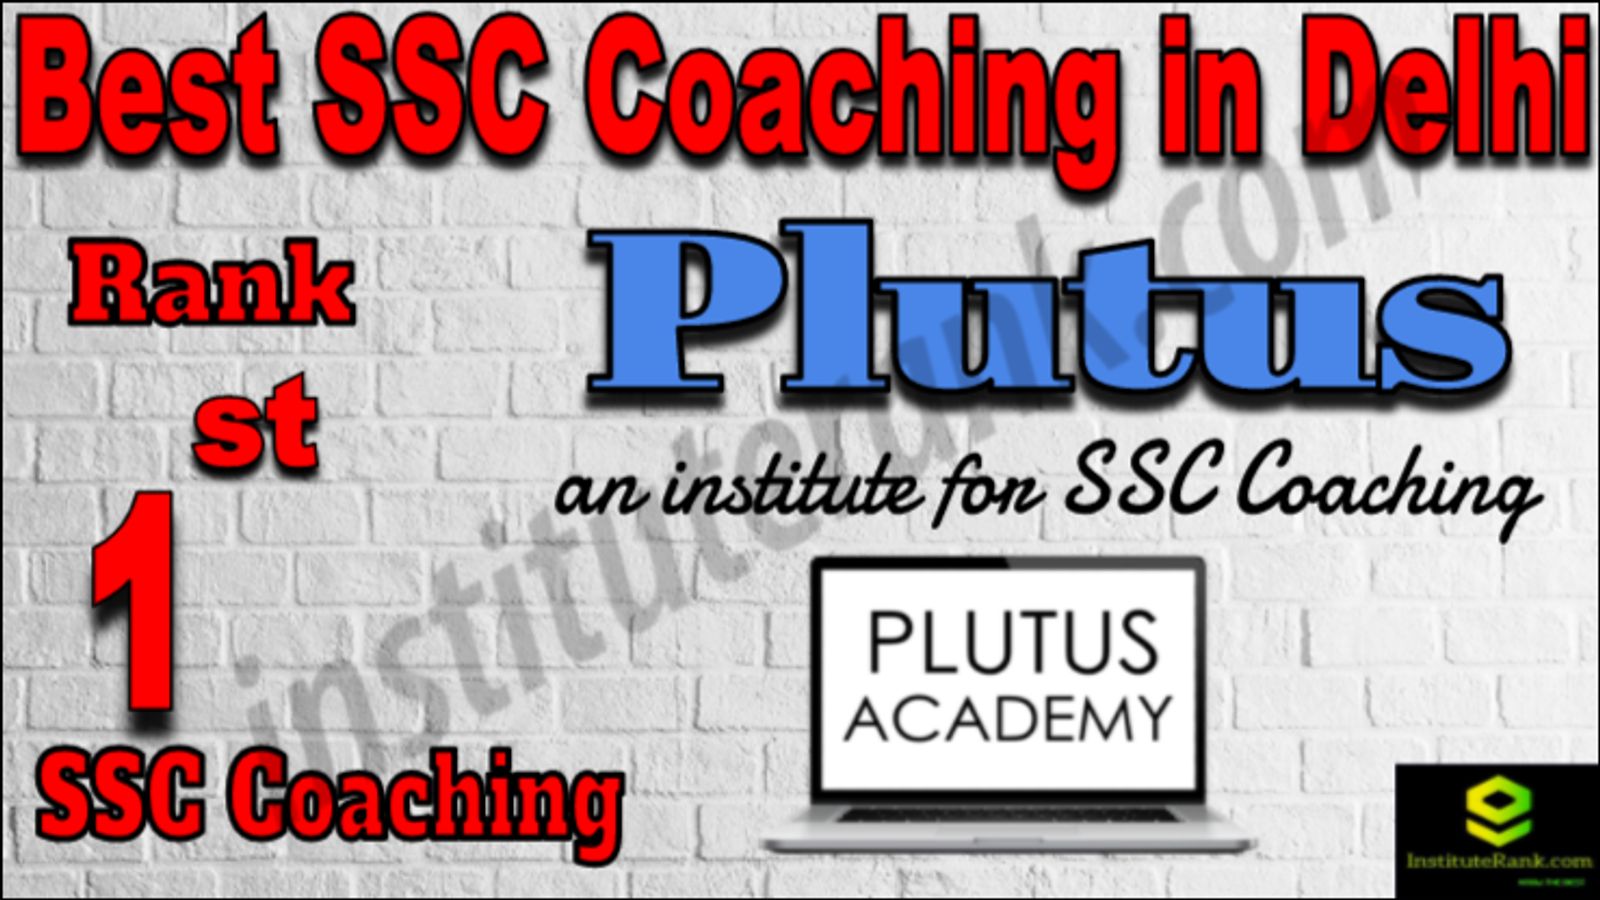 Rank 1 Best SSC Coaching in Delhi